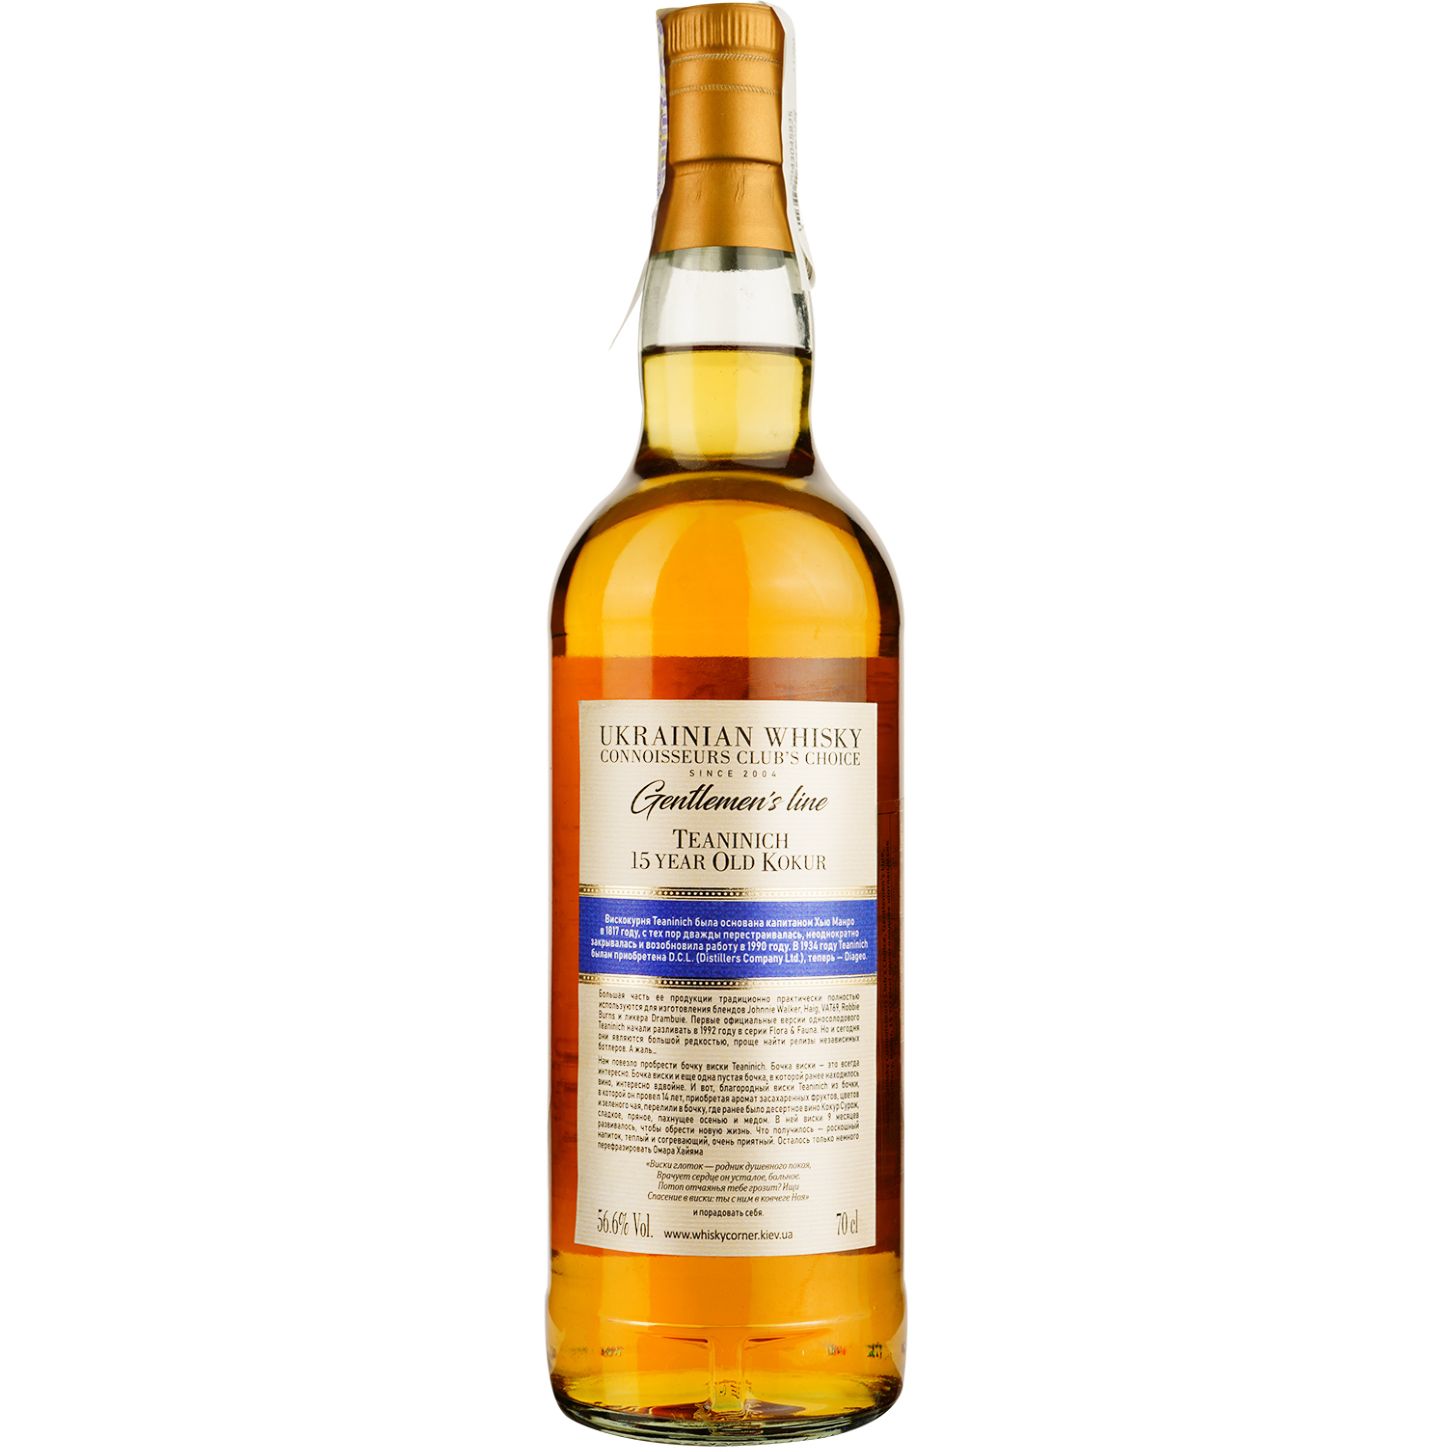 Віскі Teaninich 15 Years Old Kokur Single Malt Scotch Whisky, у подарунковій упаковці, 56,6%, 0,7 л - фото 4